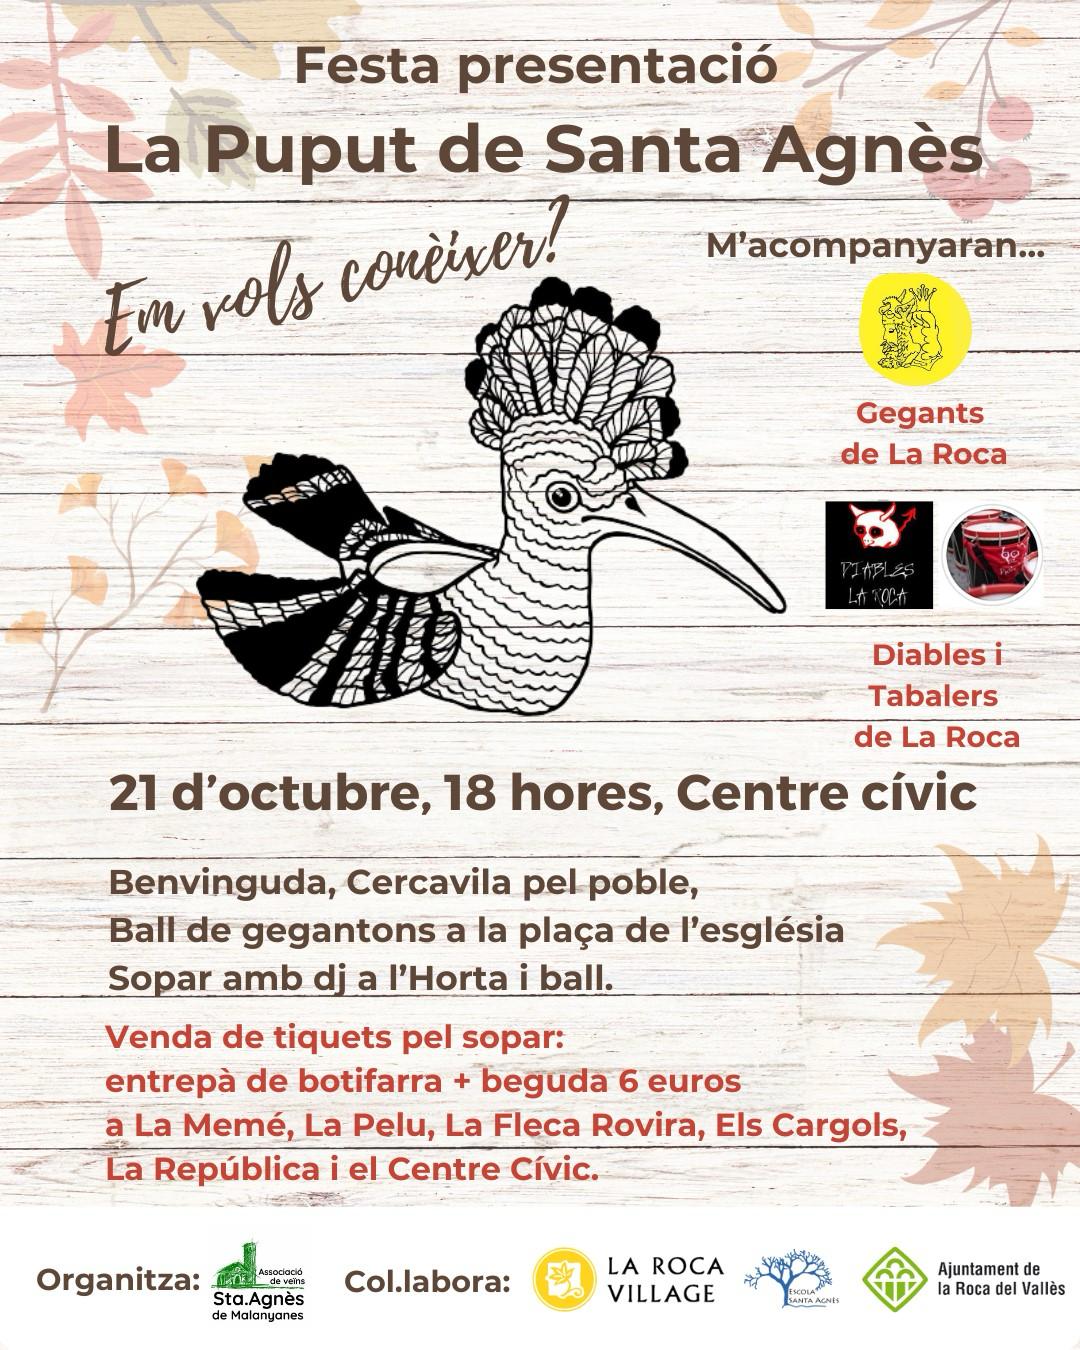 Festa presentació de La Puput de Santa Agnès